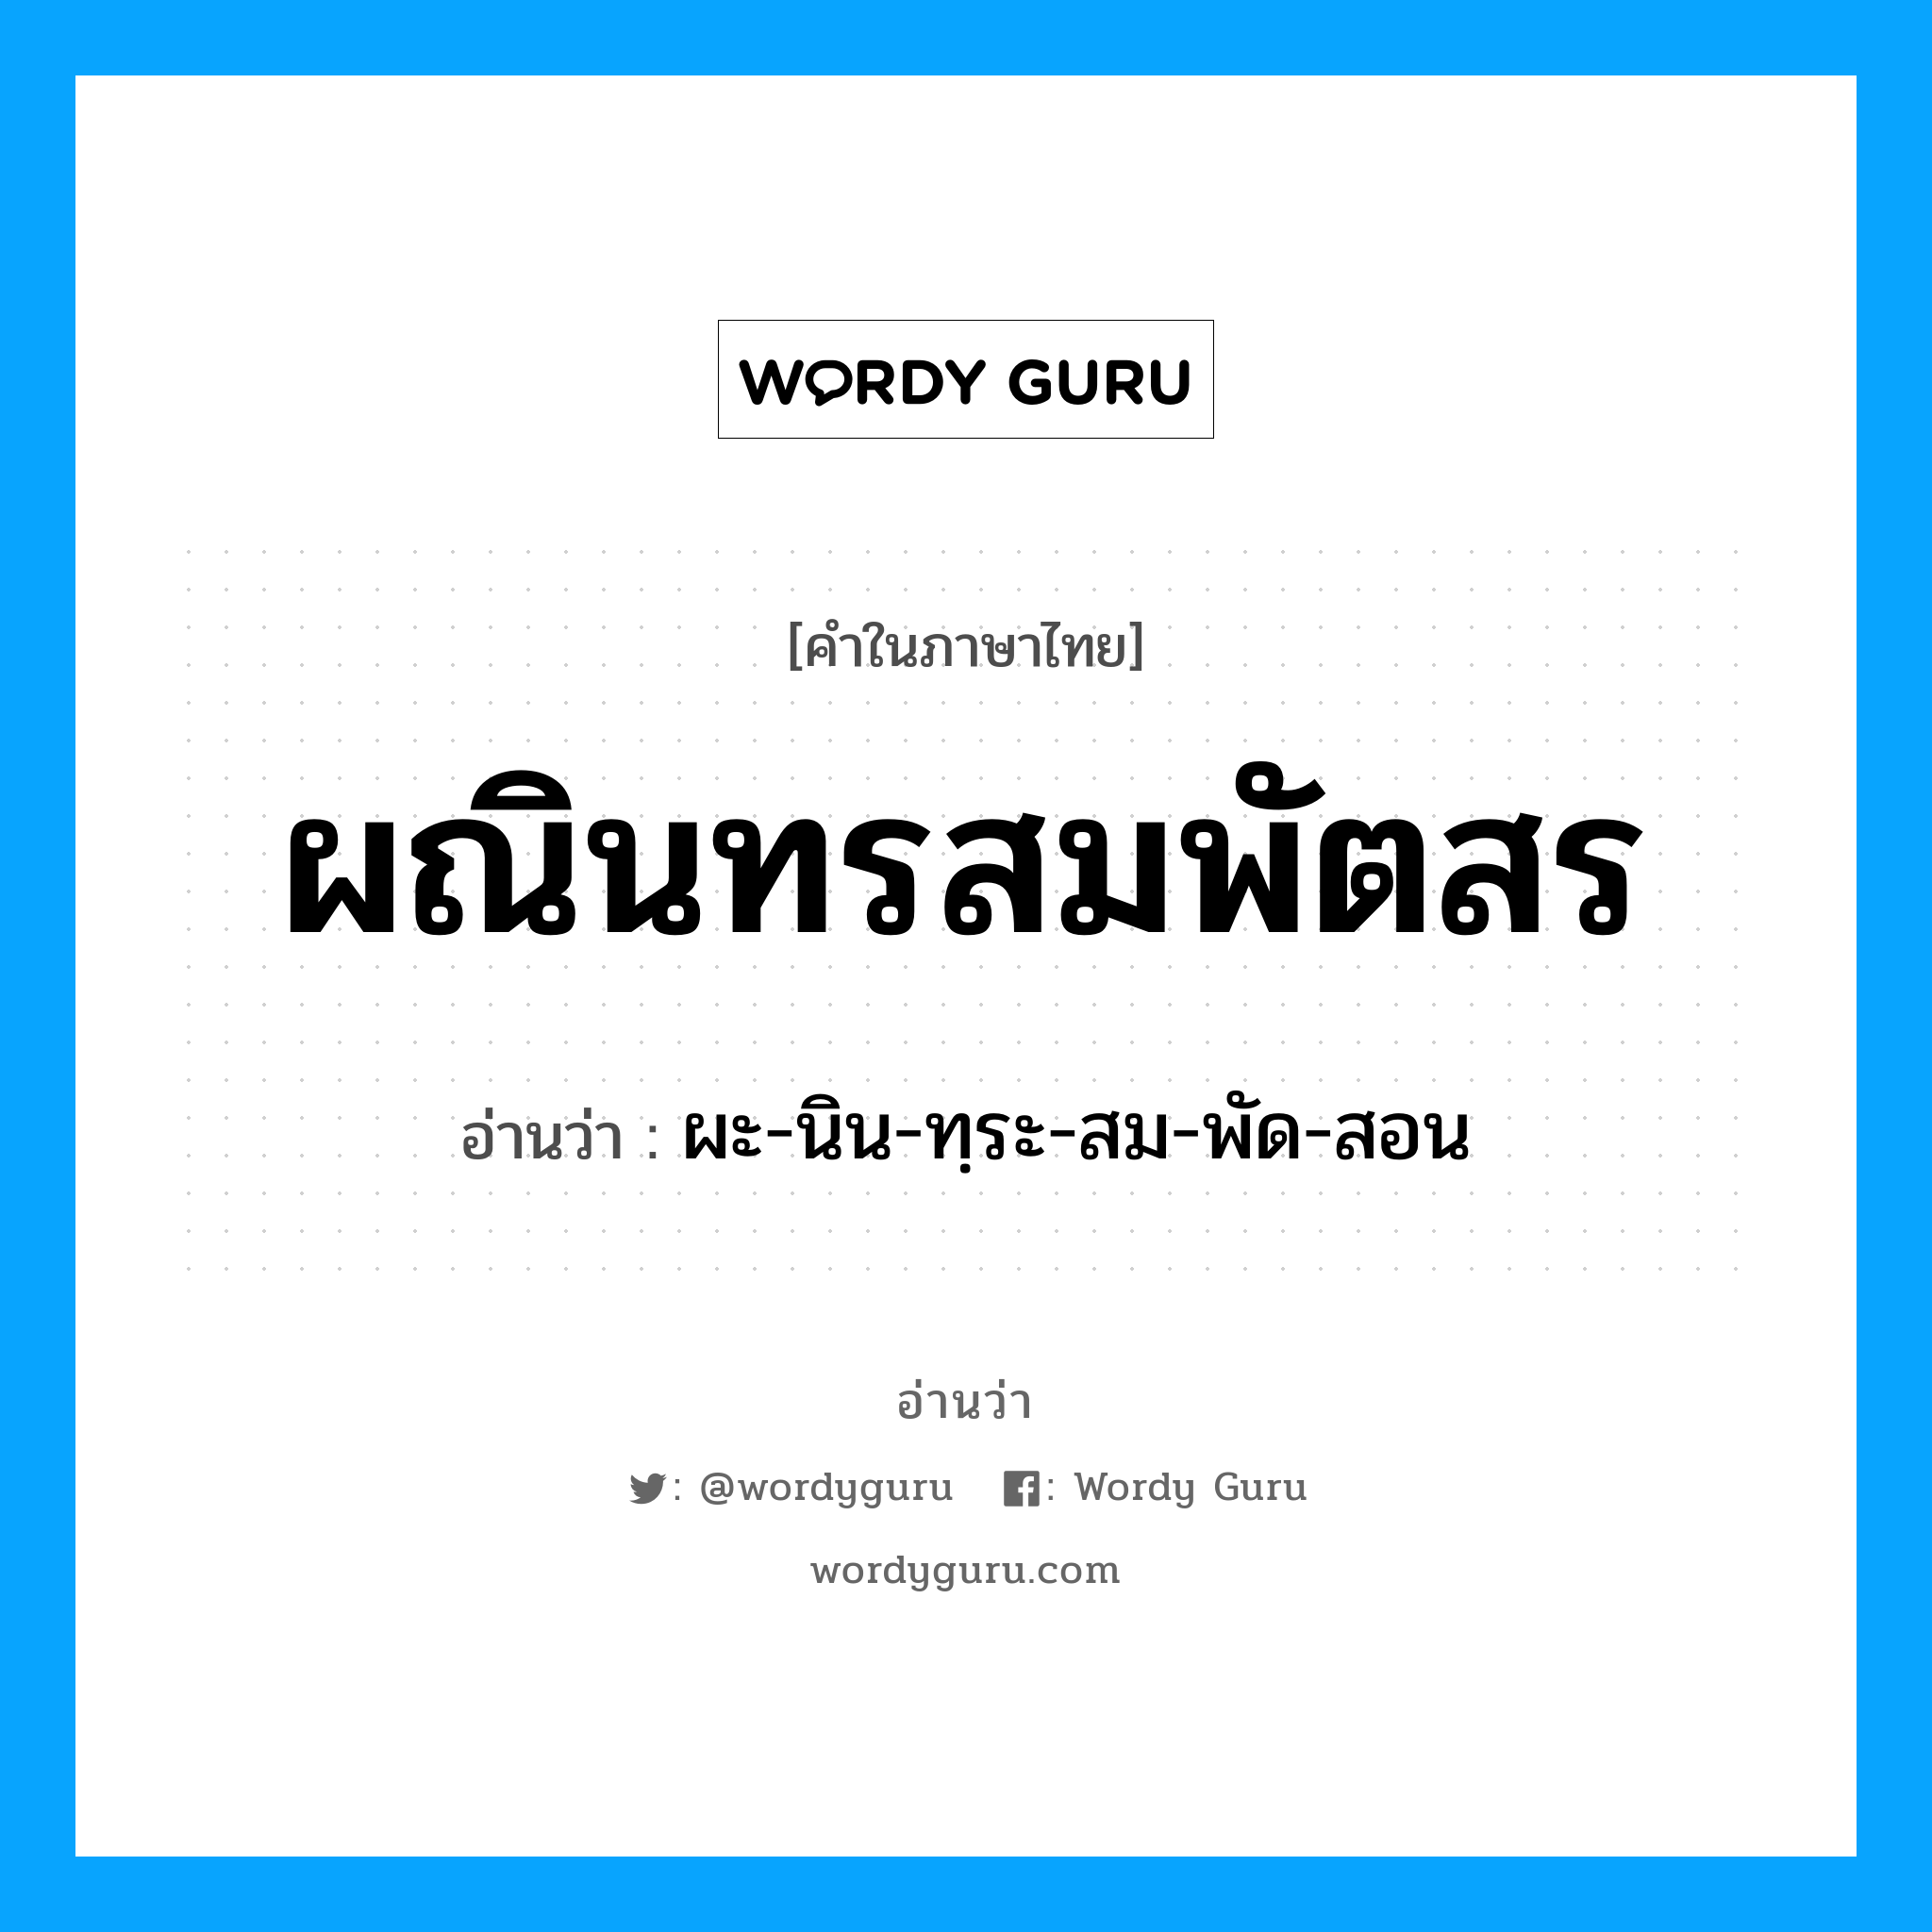 ผะ-นิน-ทฺระ-สม-พัด-สอน เป็นคำอ่านของคำไหน?, คำในภาษาไทย ผะ-นิน-ทฺระ-สม-พัด-สอน อ่านว่า ผณินทรสมพัตสร